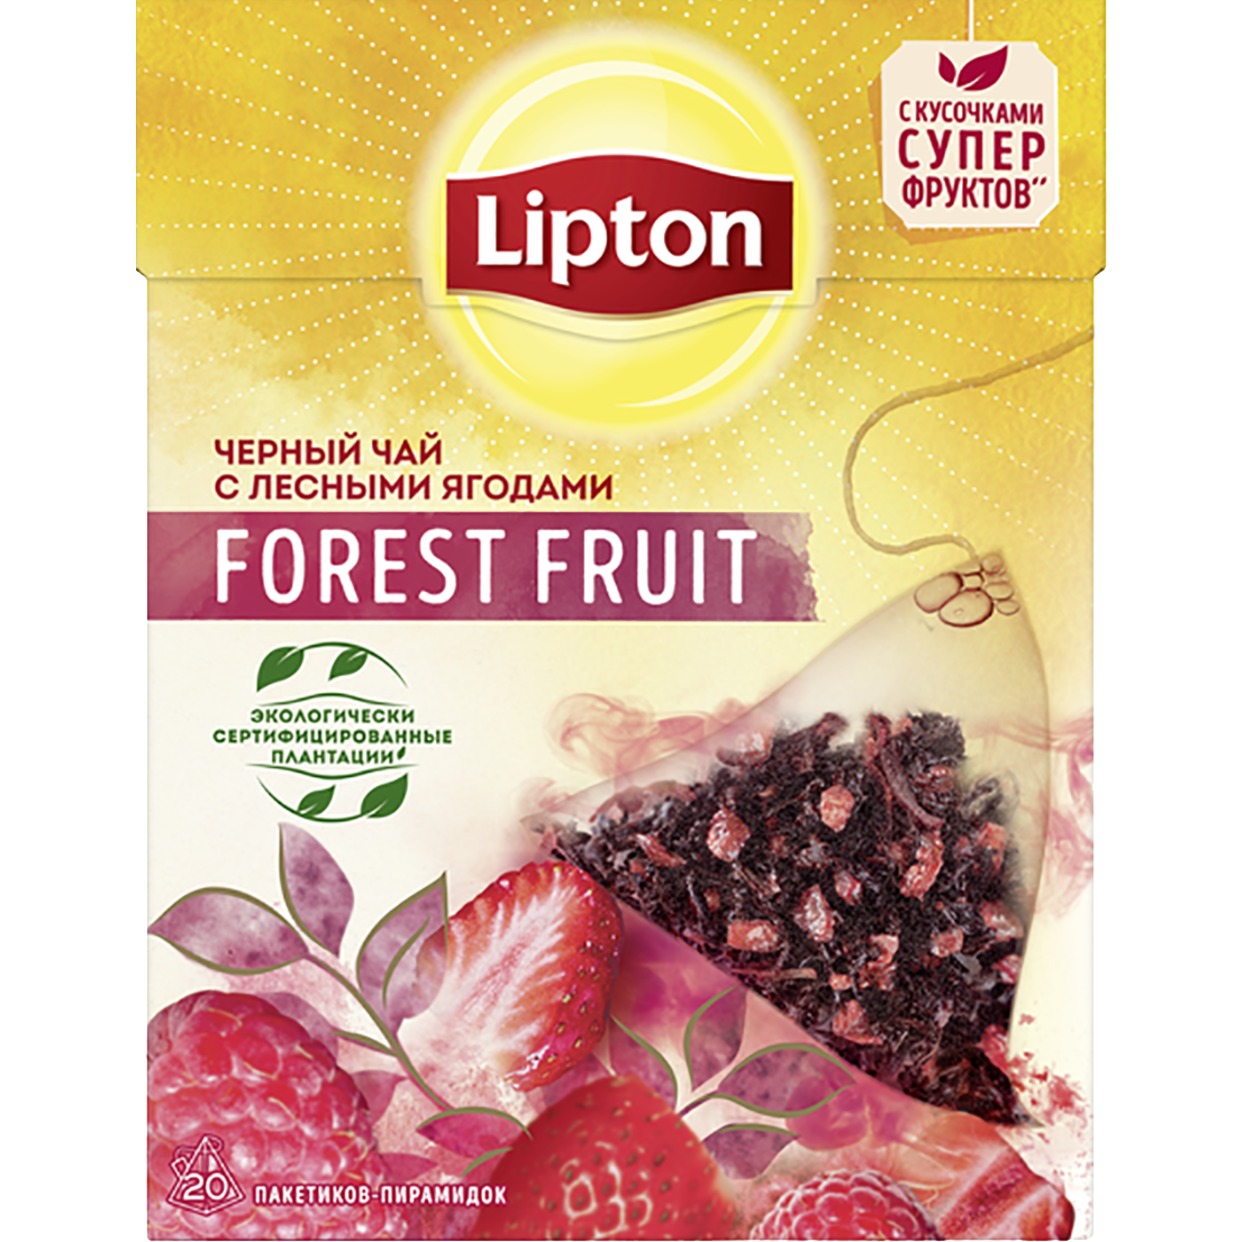 Чай "Lipton" Forest Fruit черный 20пак*1.7г по акции в Пятерочке